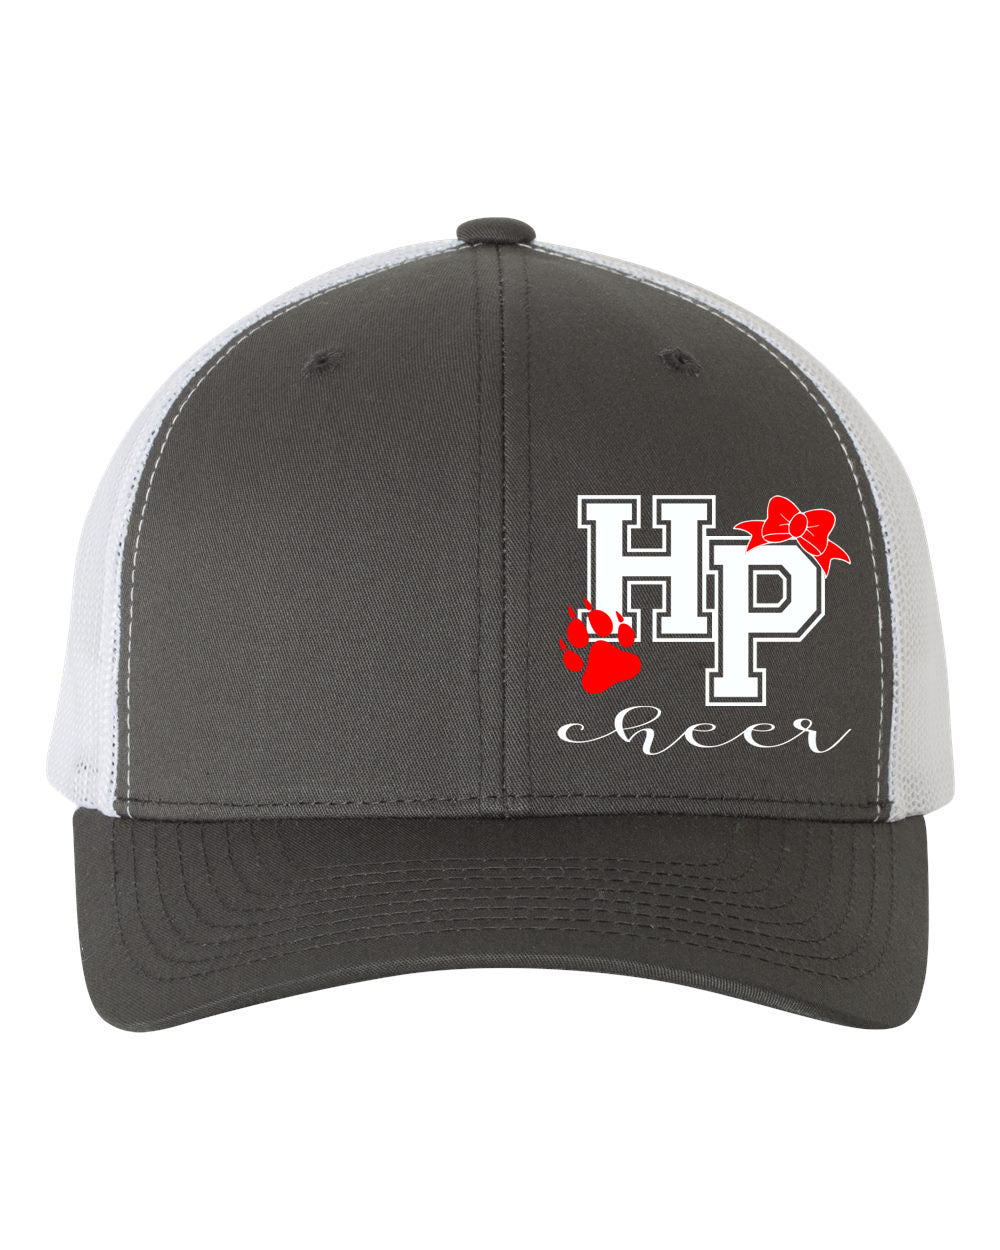 High Point Cheer Design 3 Trucker Hat